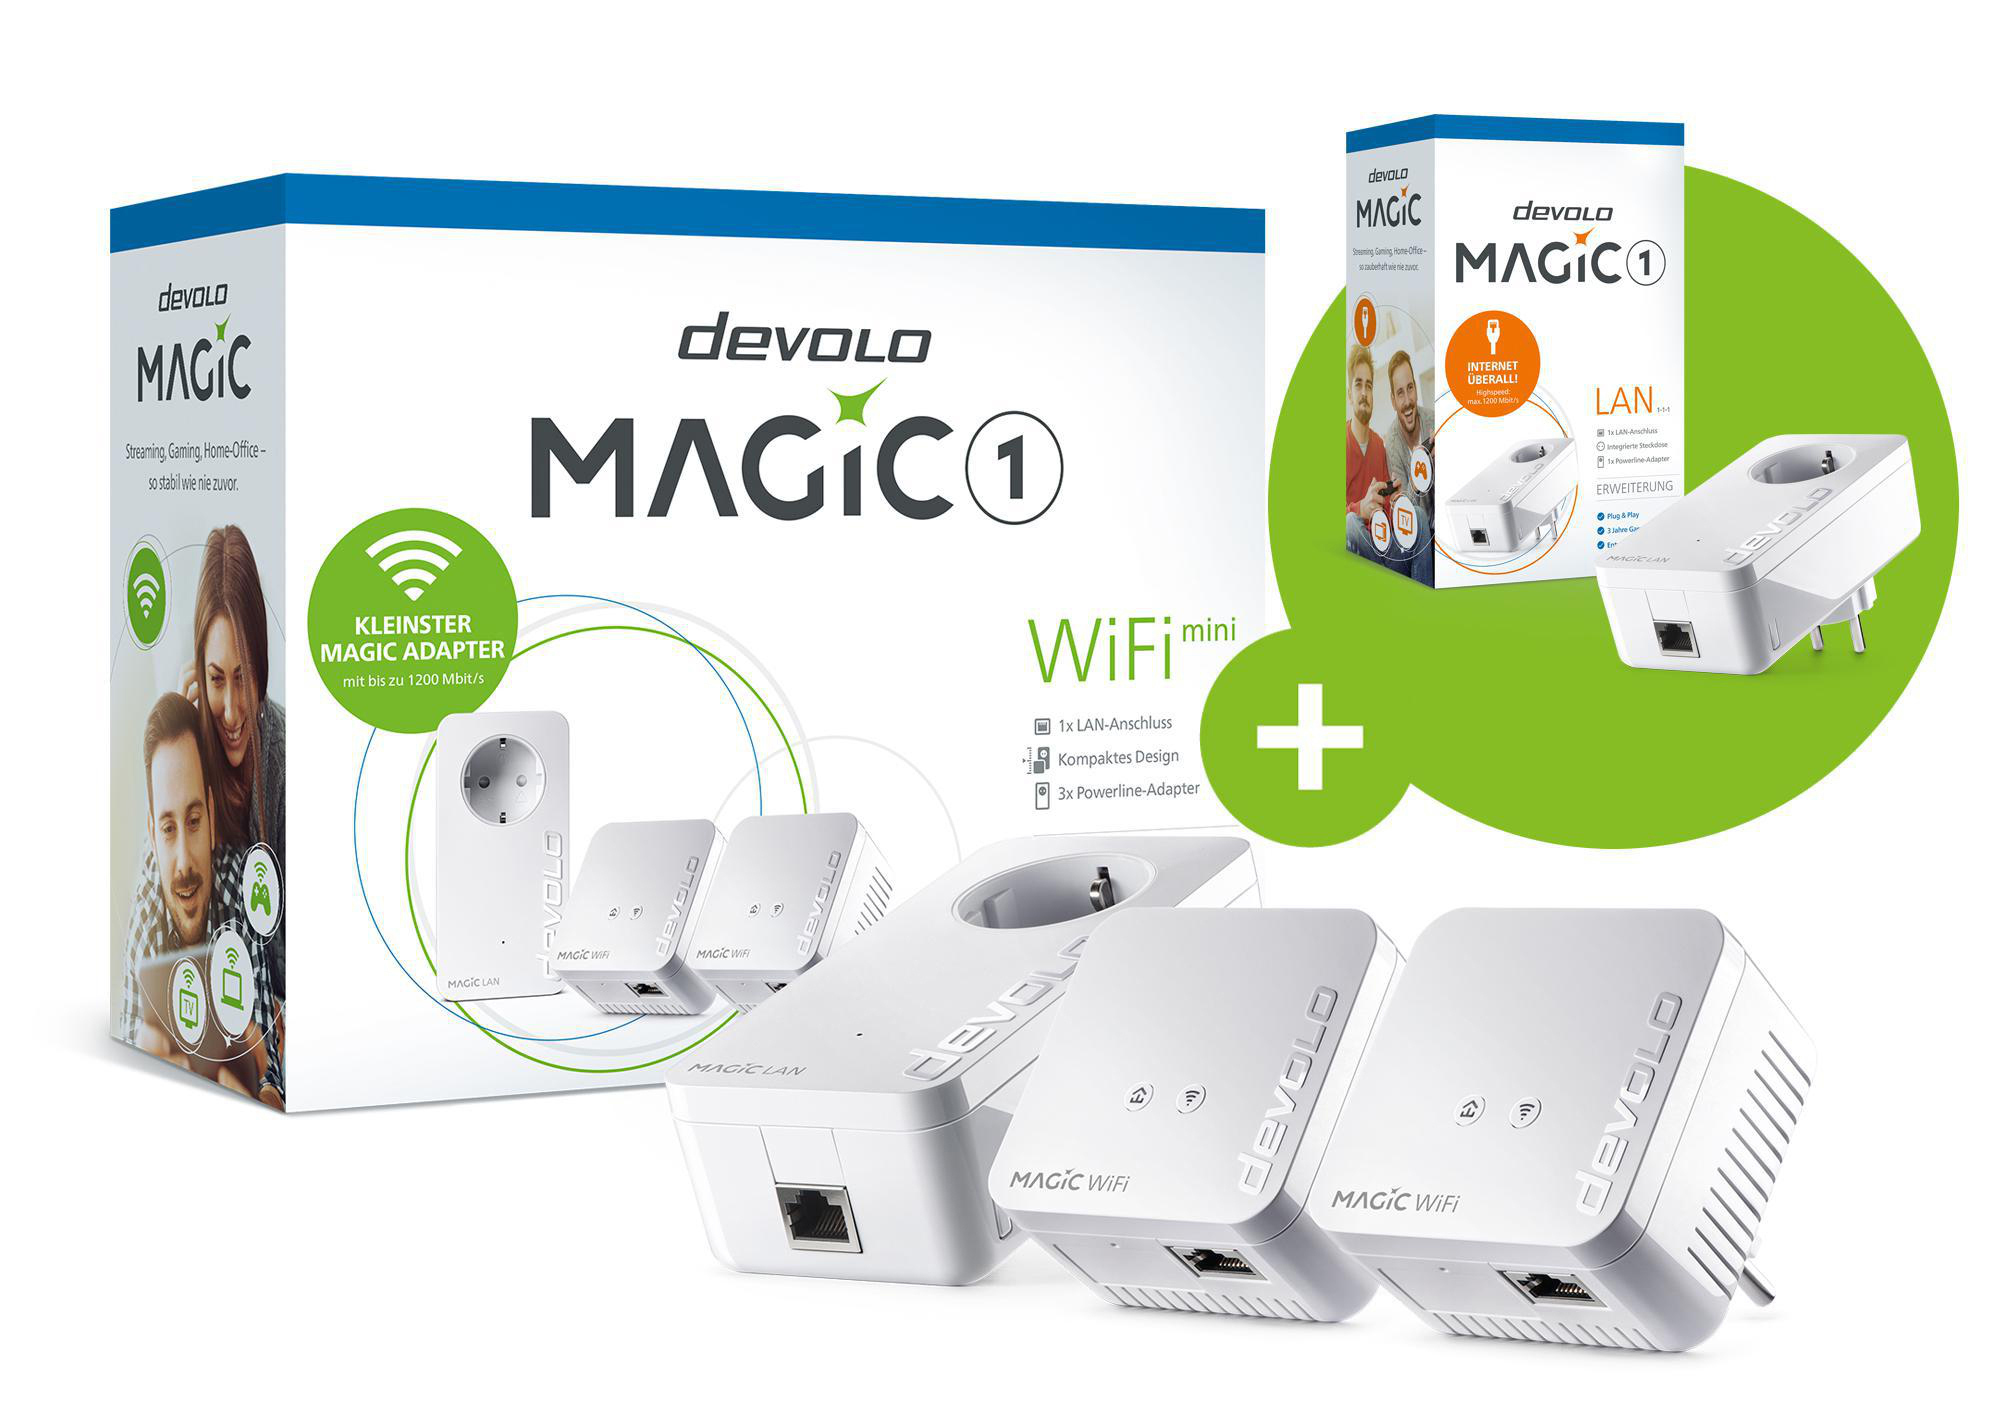 LAN Magic + Adapter Kit Powerline Kabellos Kabelgebunden 1200 1 WiFi 1 DEVOLO und Magic Multiroom Mbit/s Mini